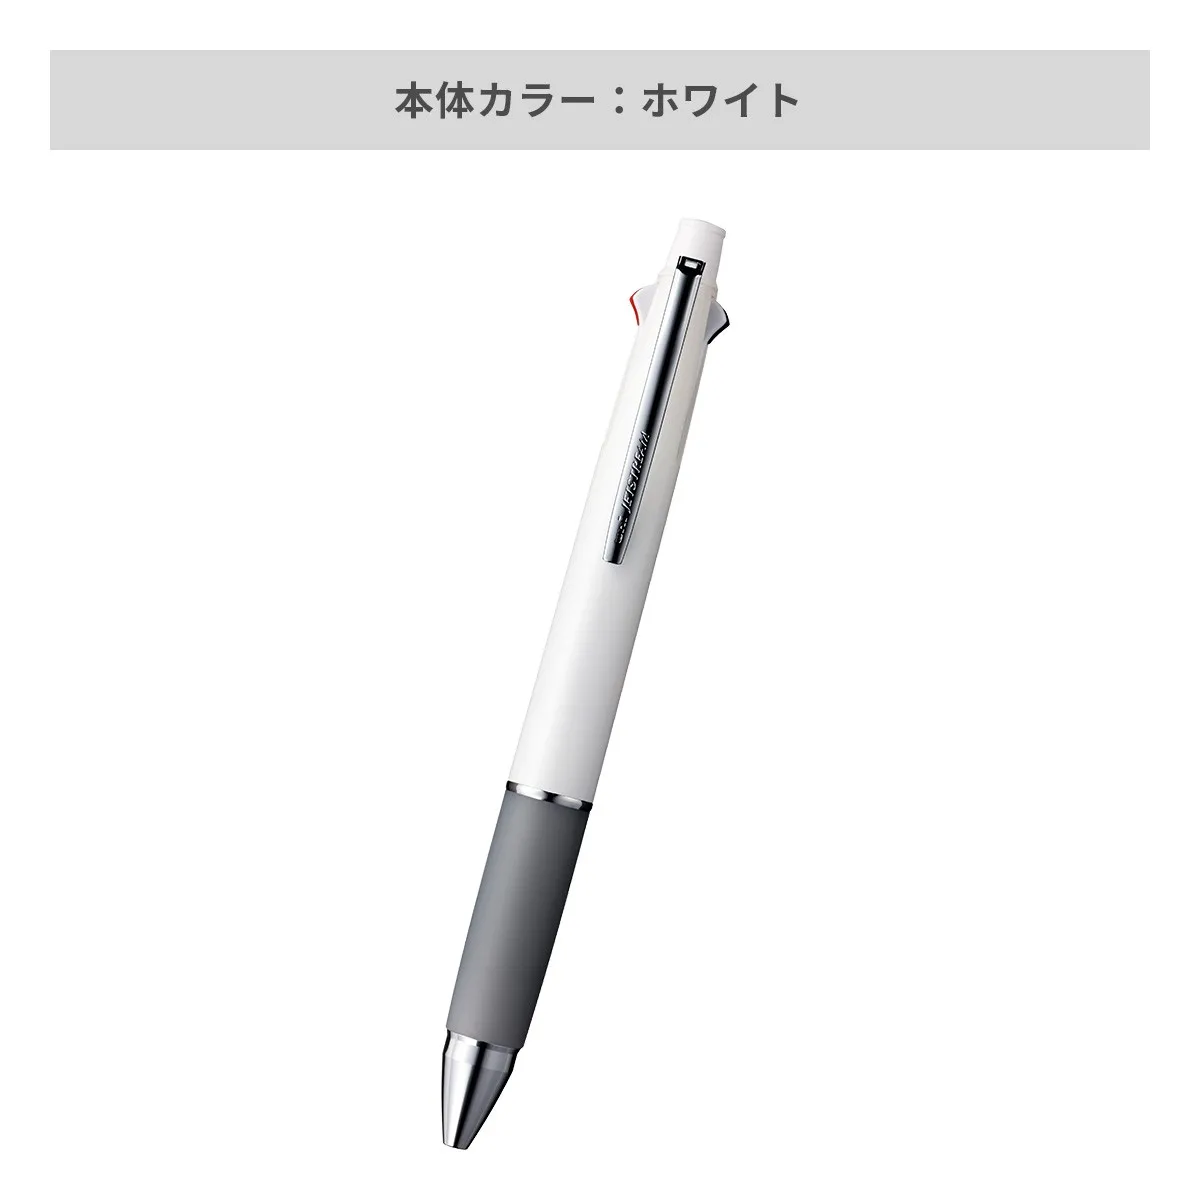 【短納期】三菱鉛筆 ジェットストリーム 多機能ペン 4&1 0.7mm【多機能ペン / レーザー彫刻】 画像3